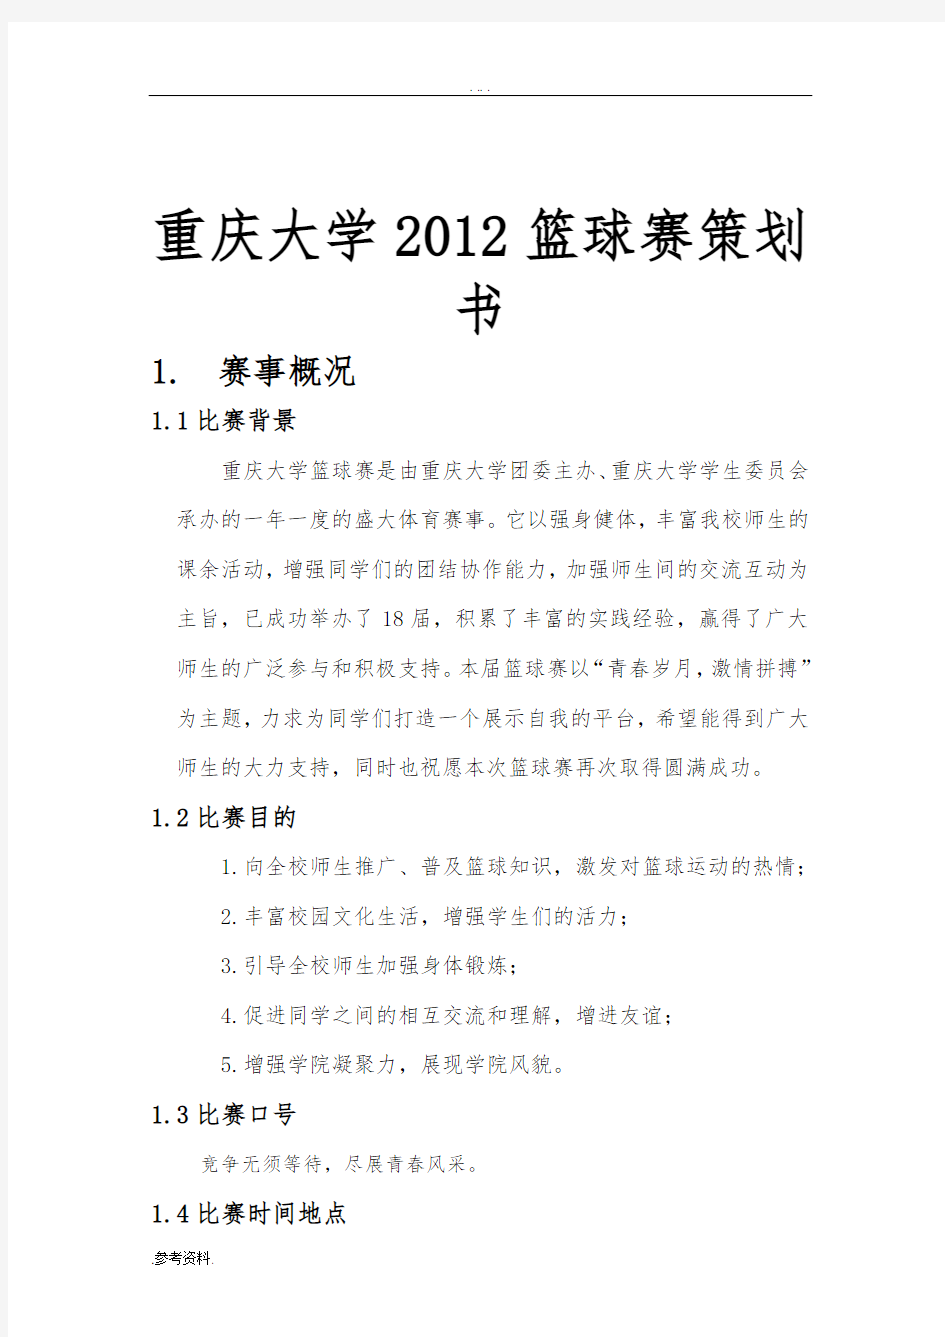 重庆大学2012年篮球赛项目策划